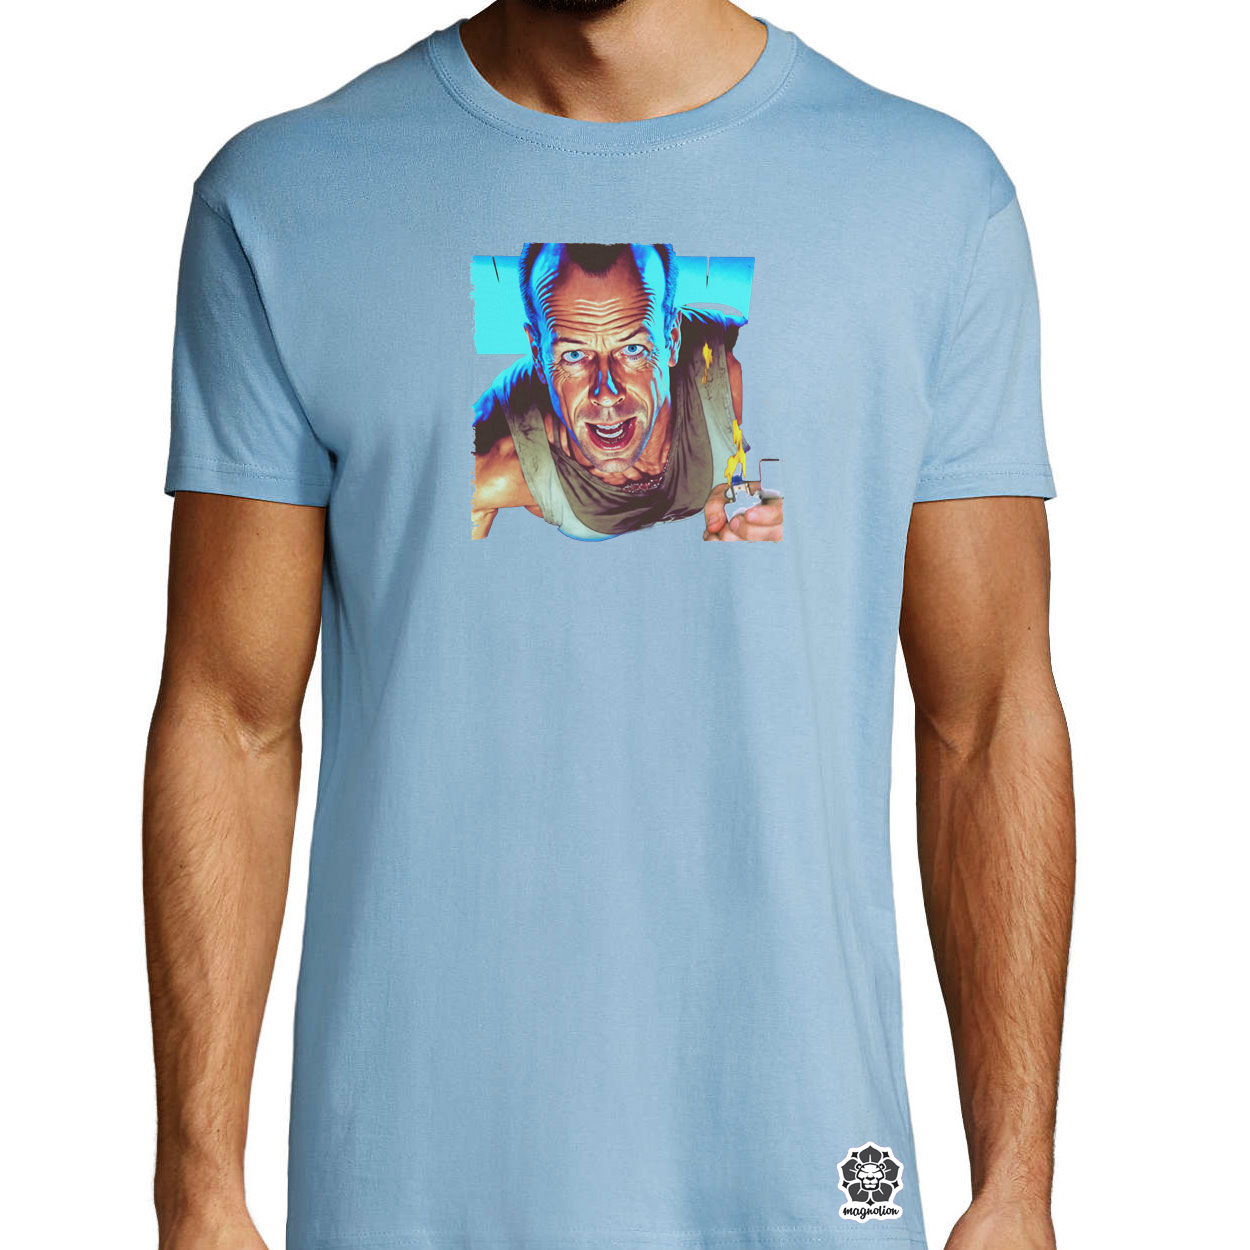 John McClane portré fanart v3